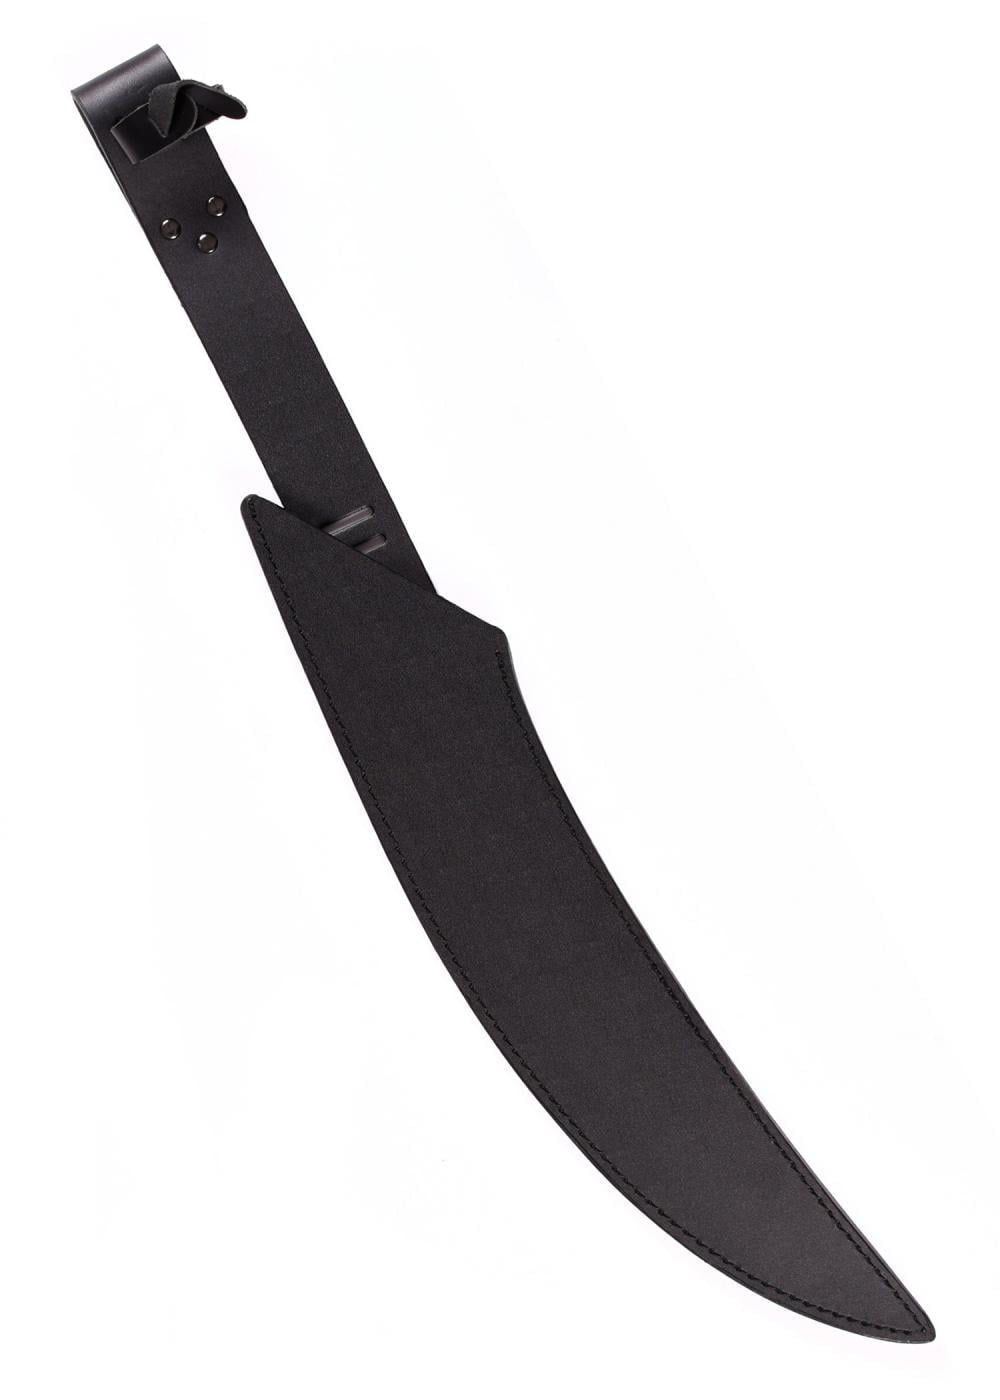 UC-KR0070 Kit Rae espada Mithlotok - Espadas y Más